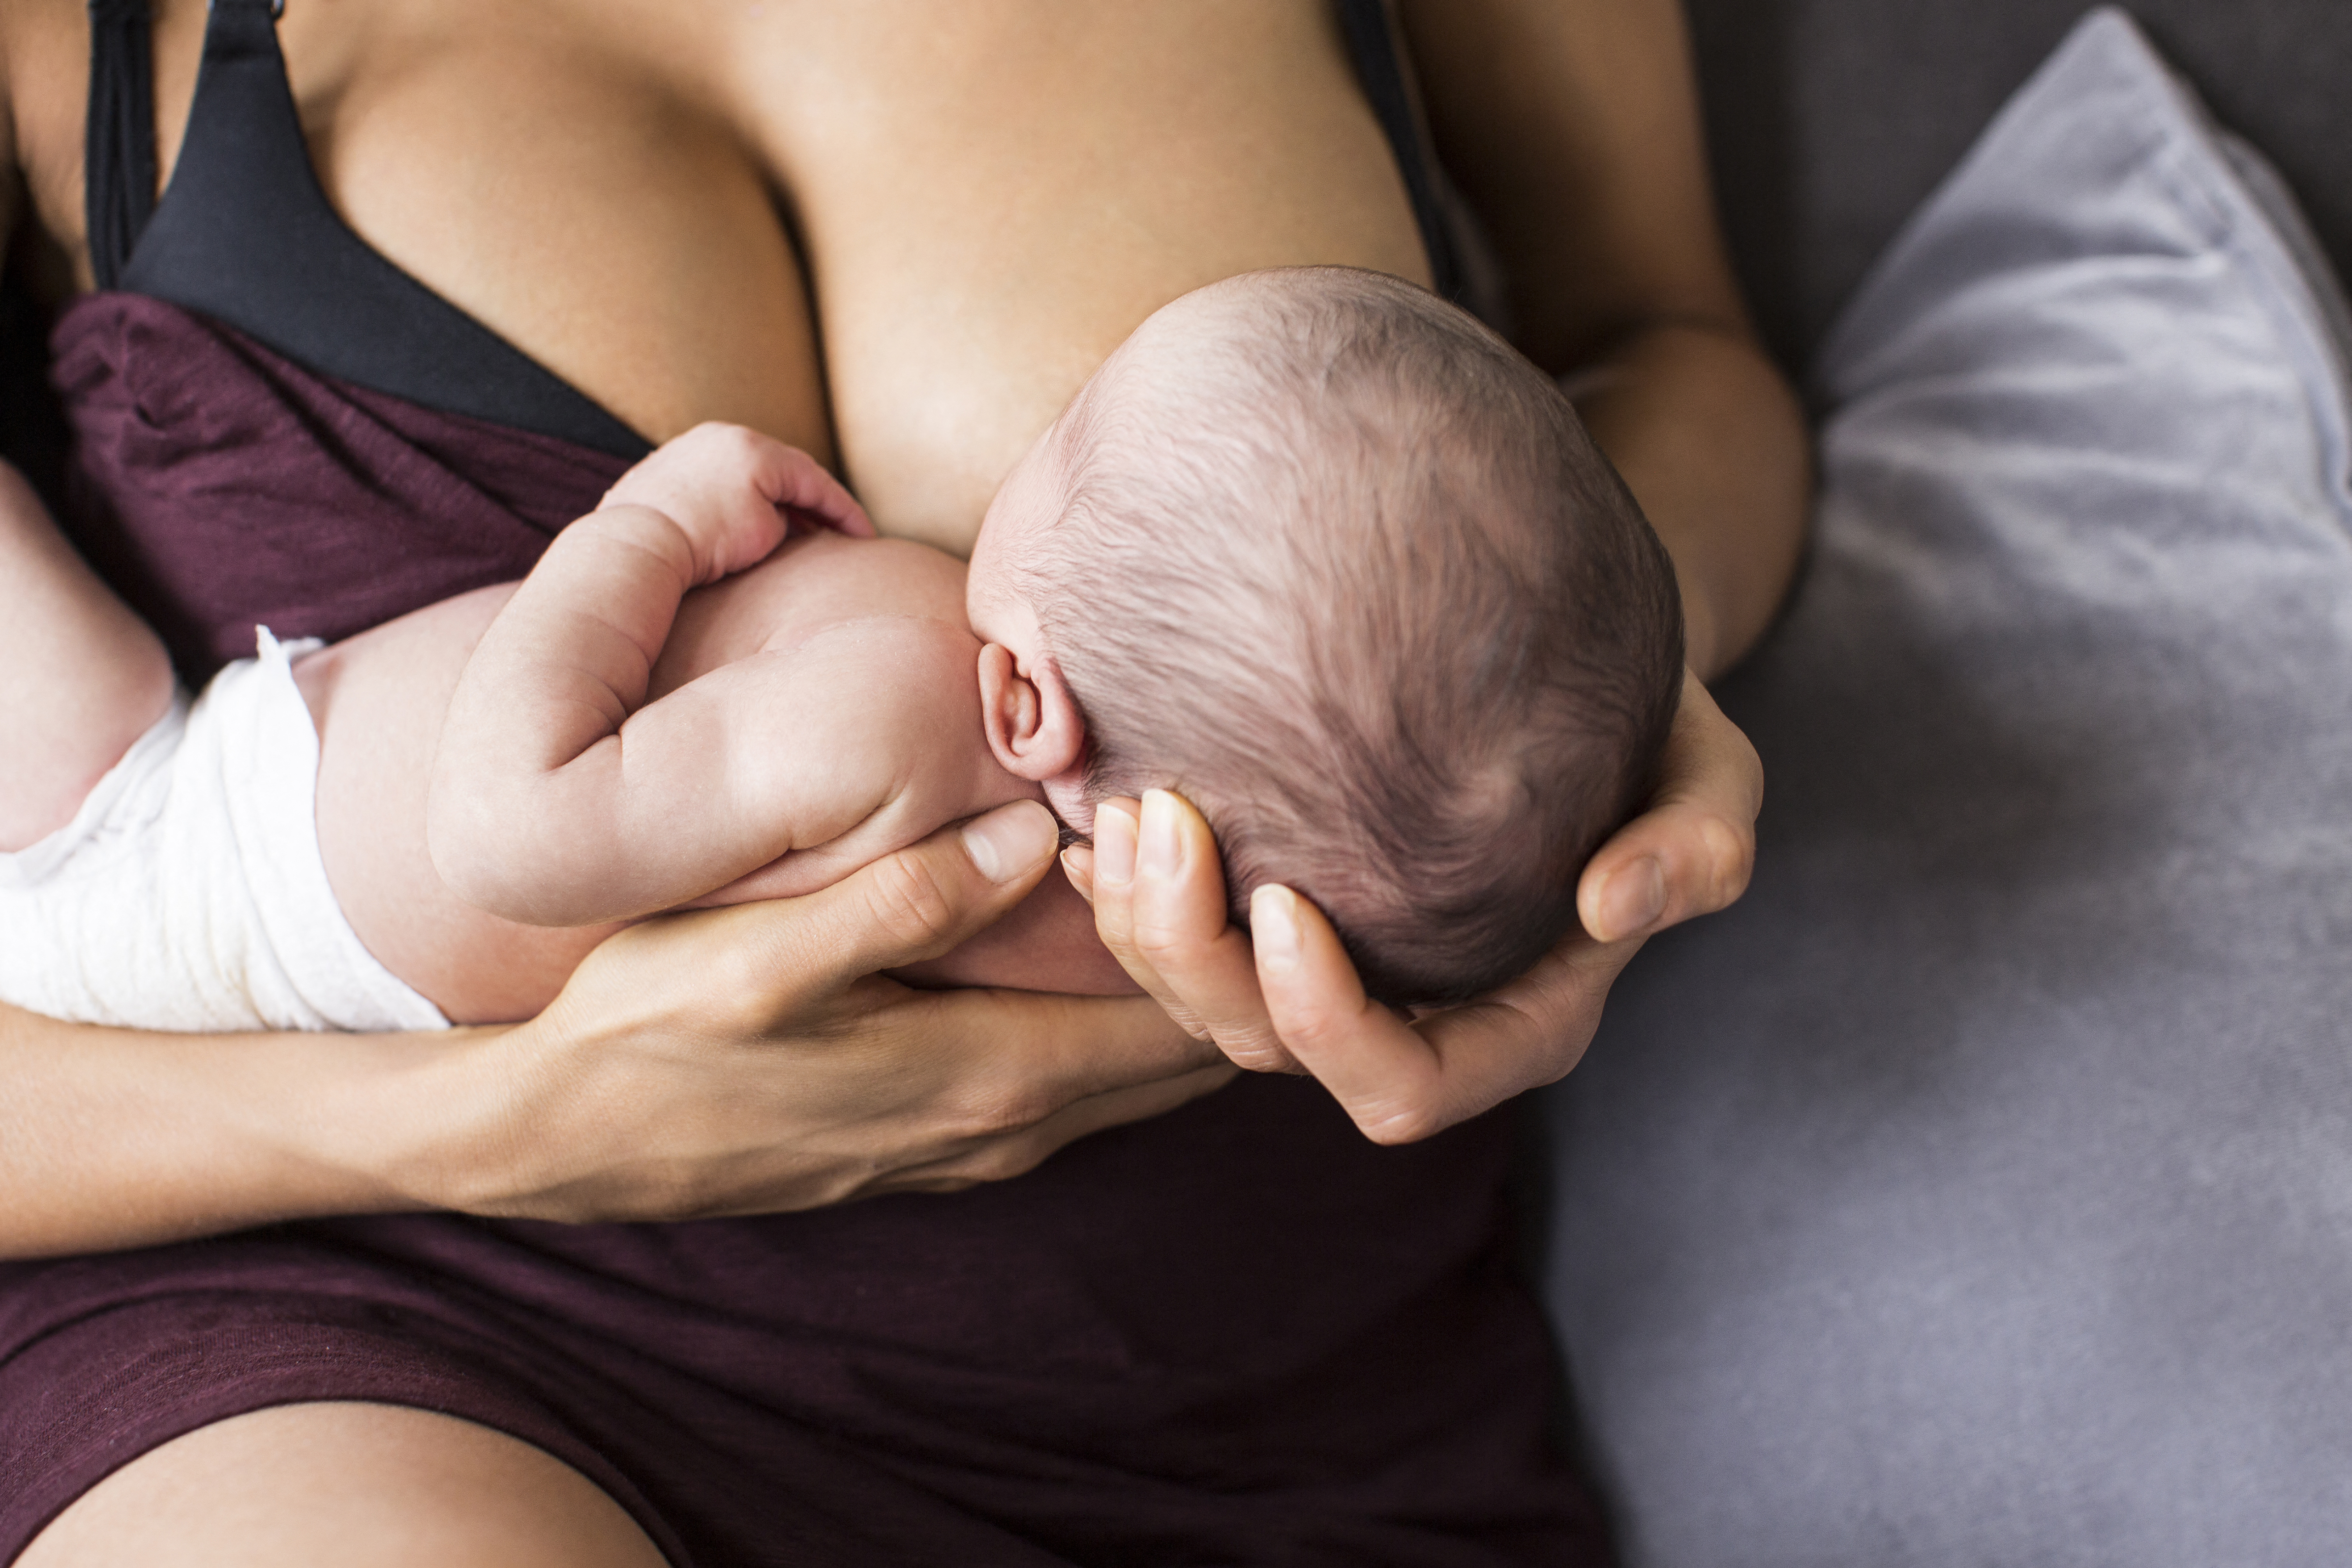 Több mint félszáz testidegen vegyületet azonosítottak anyák és újszülöttek szervezetében amerikai kutatók